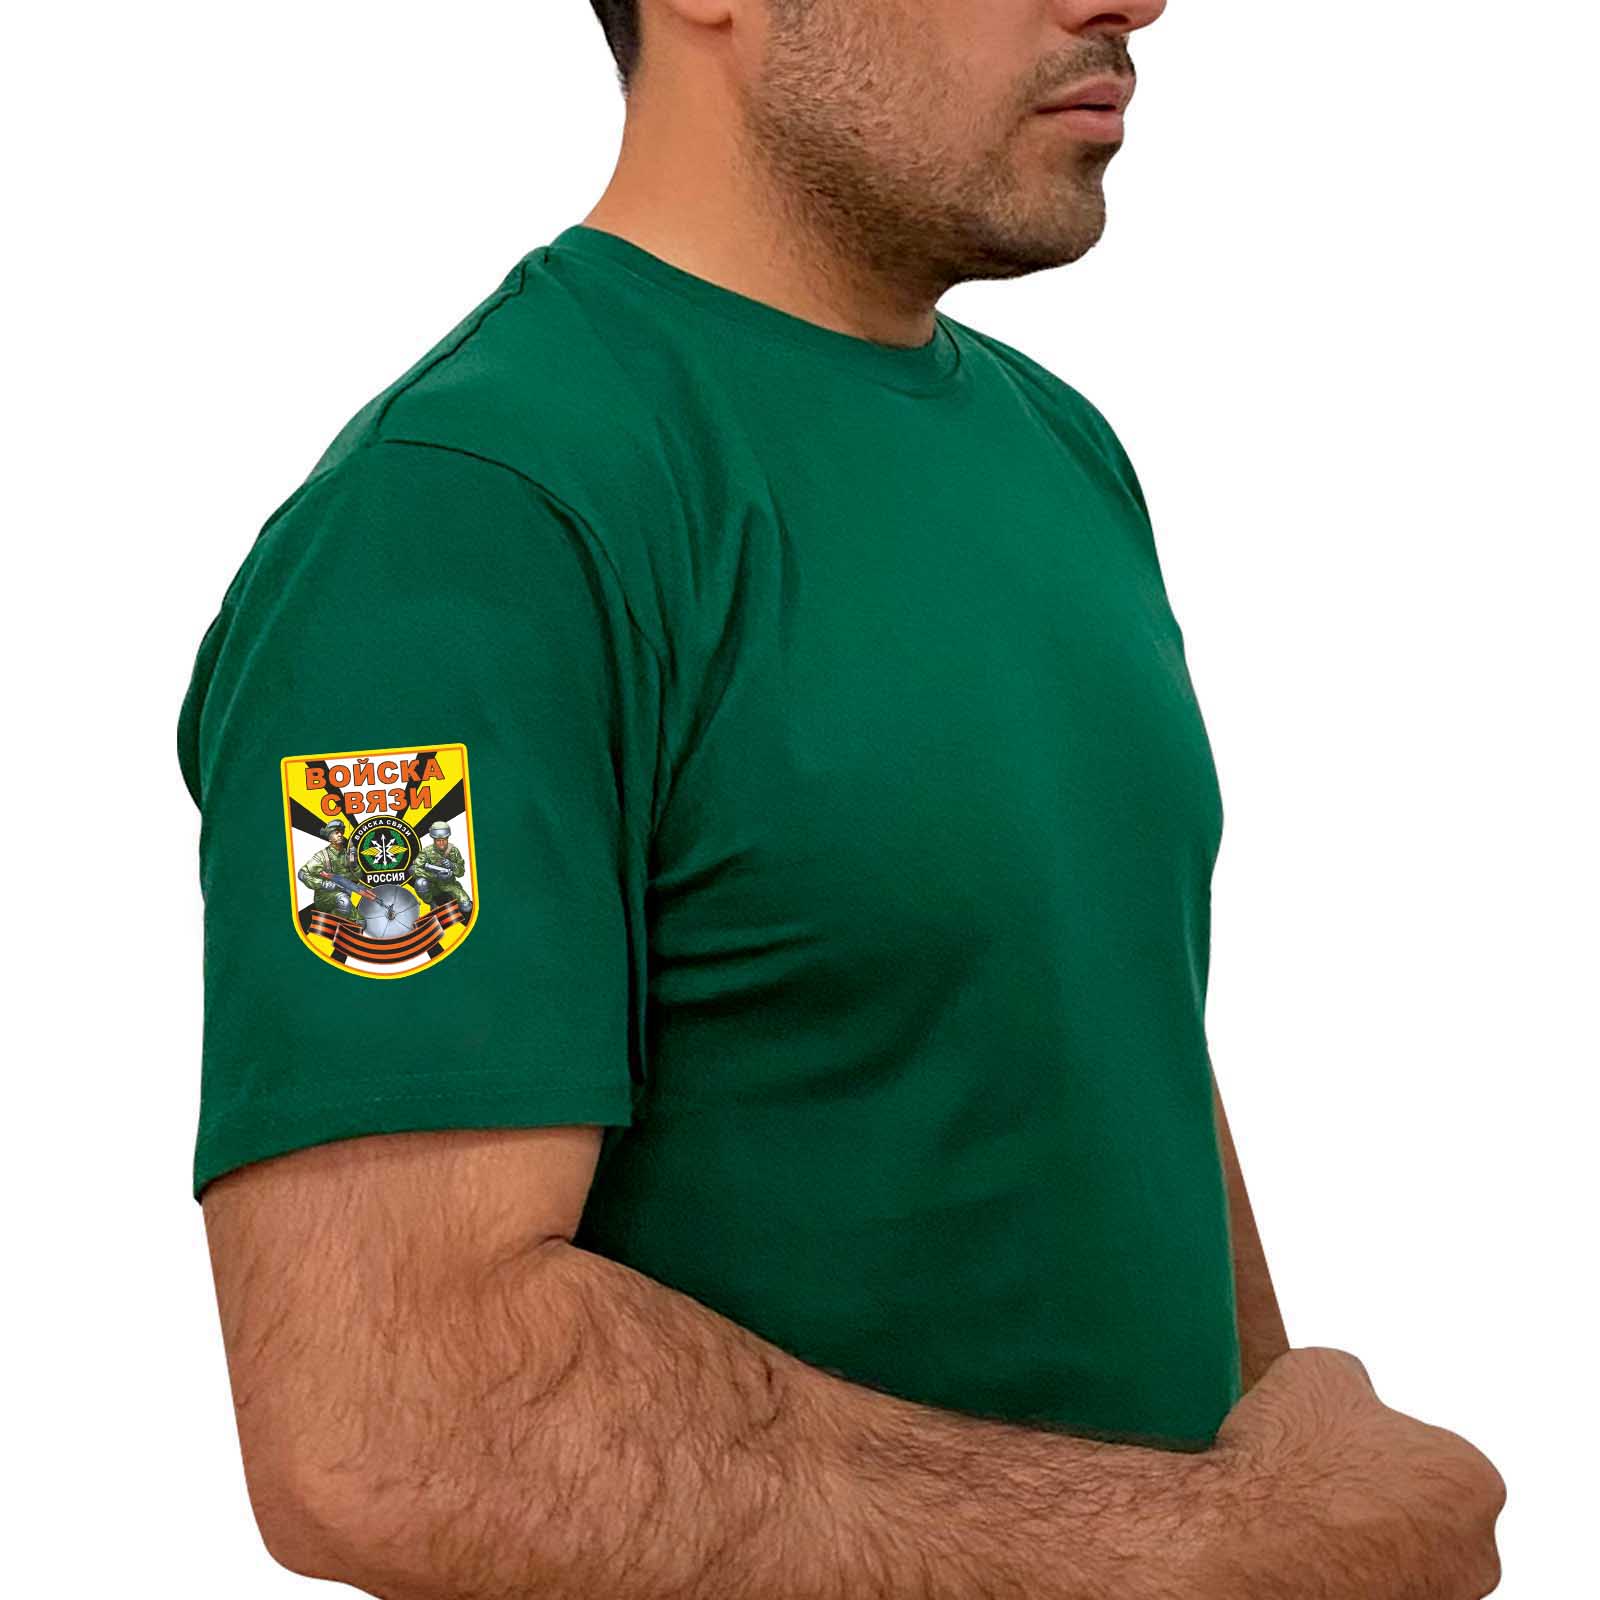 Купить надежную зеленую футболку с термотрансфером Войска Связи онлайн